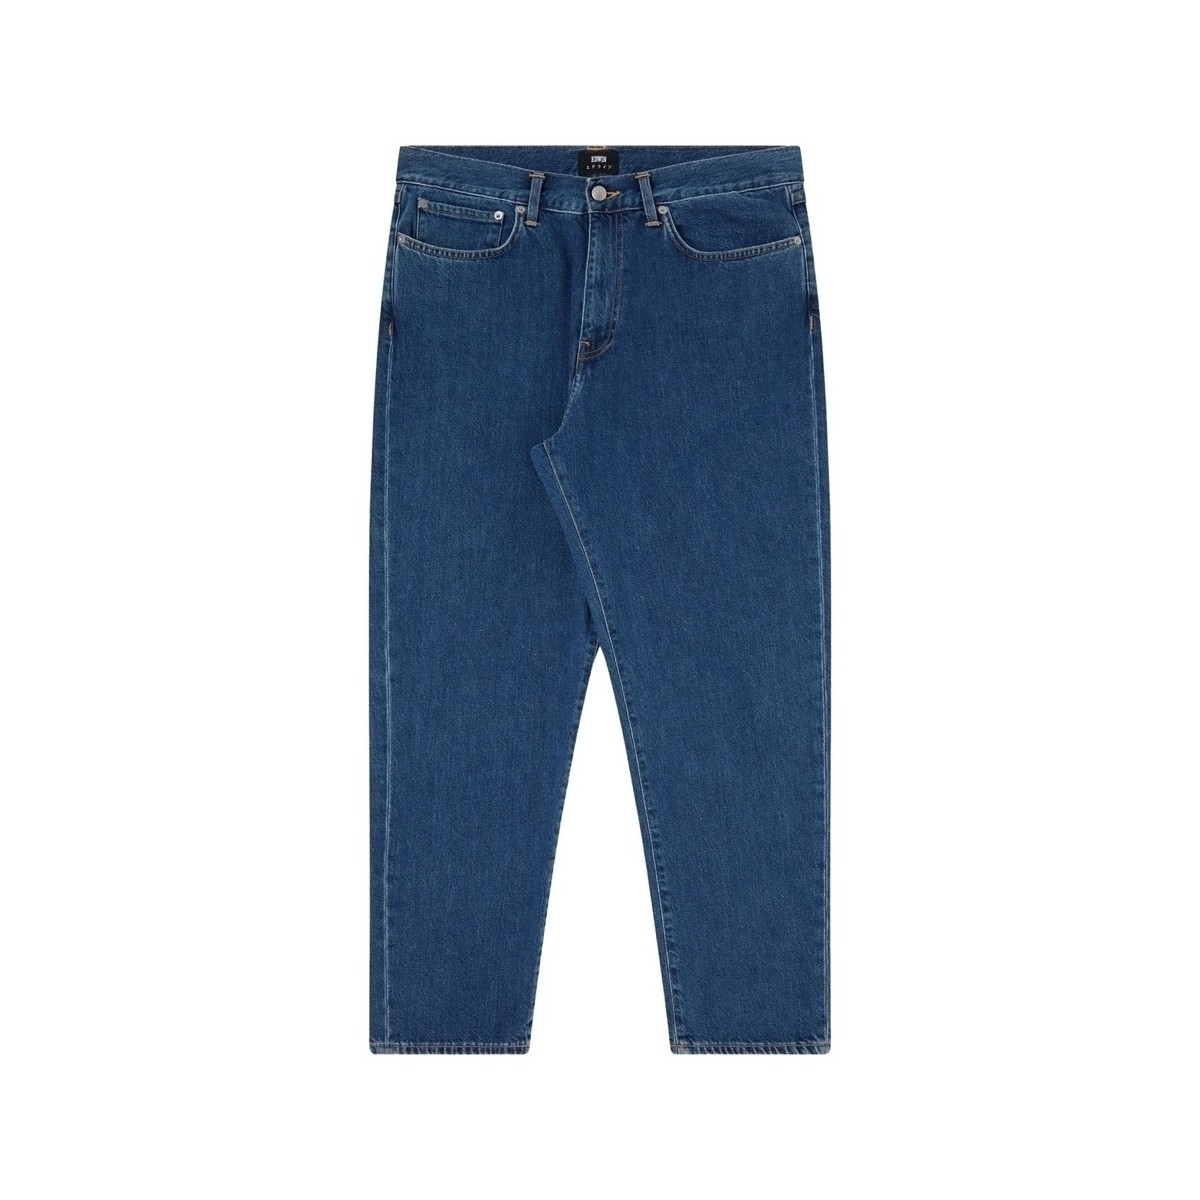 Textiel Heren Broeken / Pantalons Edwin Cosmos Pant - Blue Mid Marble Wash Blauw